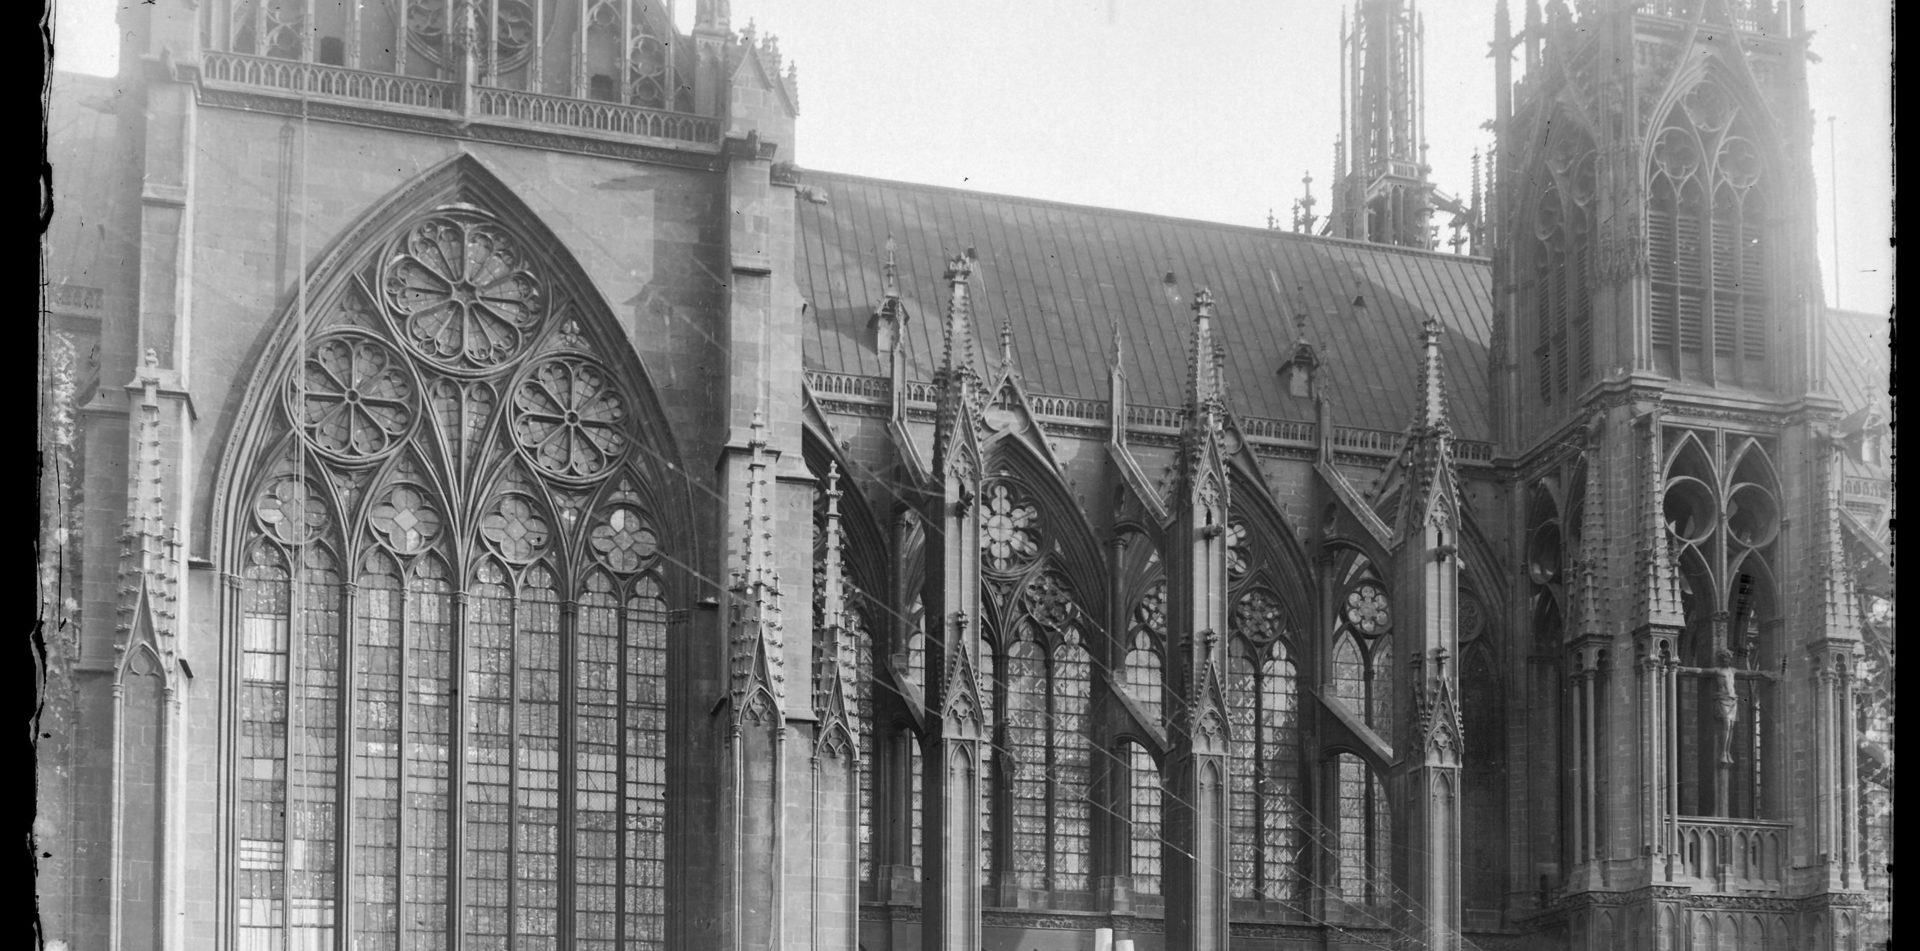 Contenu du Les vitraux de la cathédrale de Metz